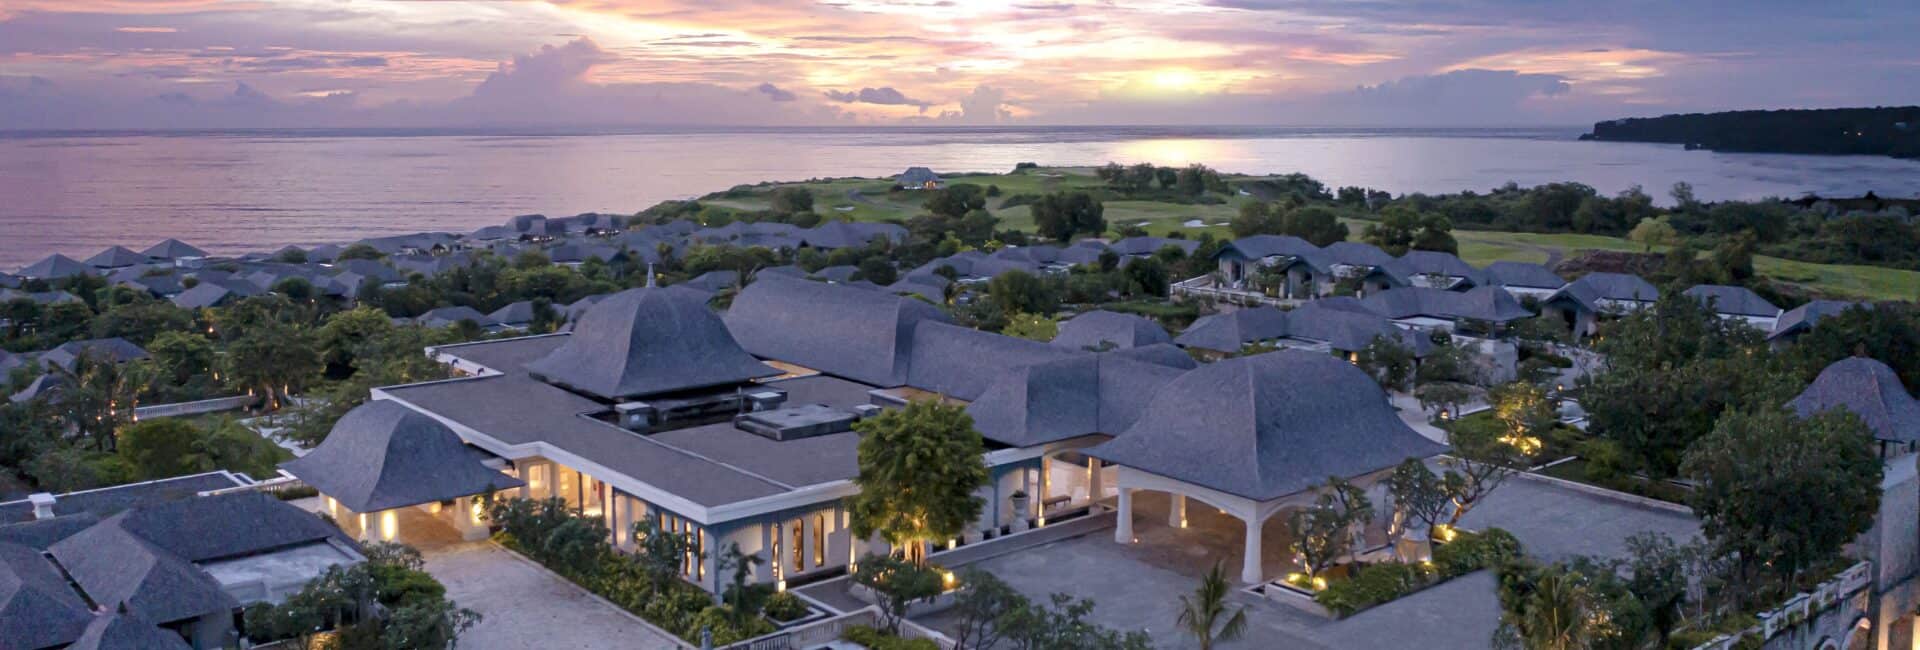 Jumeirah Bali-Resort-and-Ocean-View